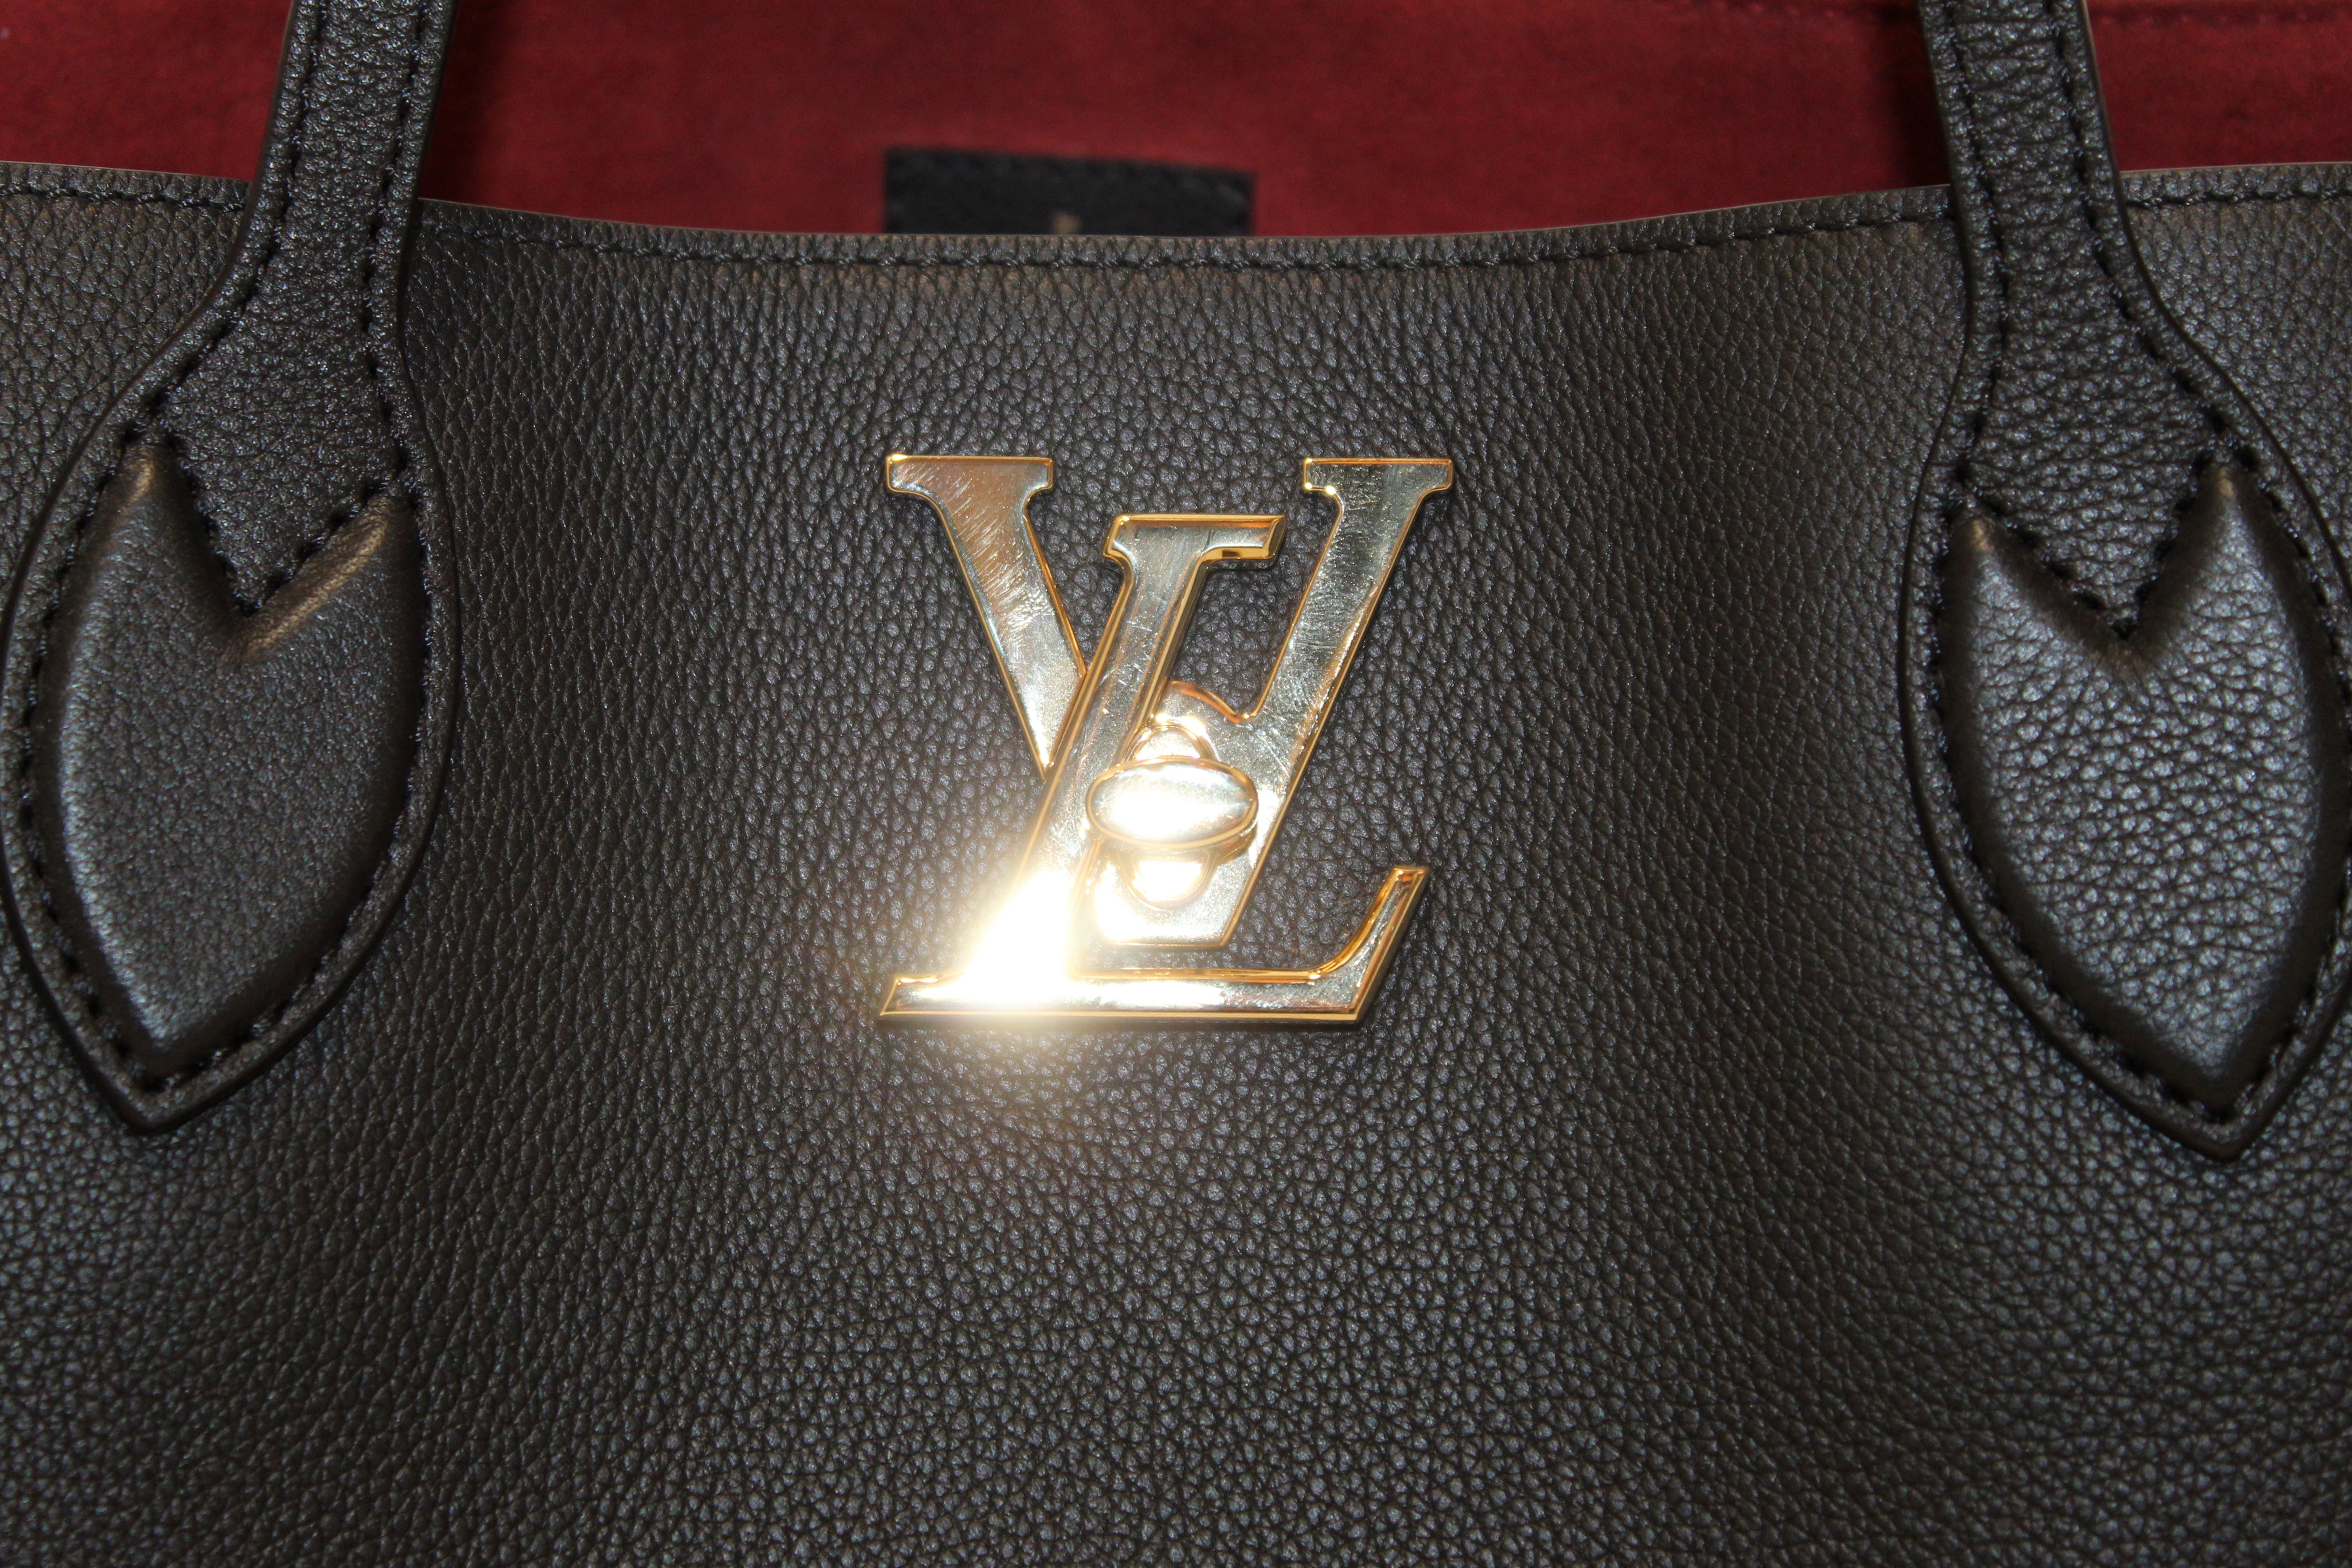 Authentic Louis Vuitton Black Grained Calf Leather Lockme Go Shopper T –  Paris Station Shop